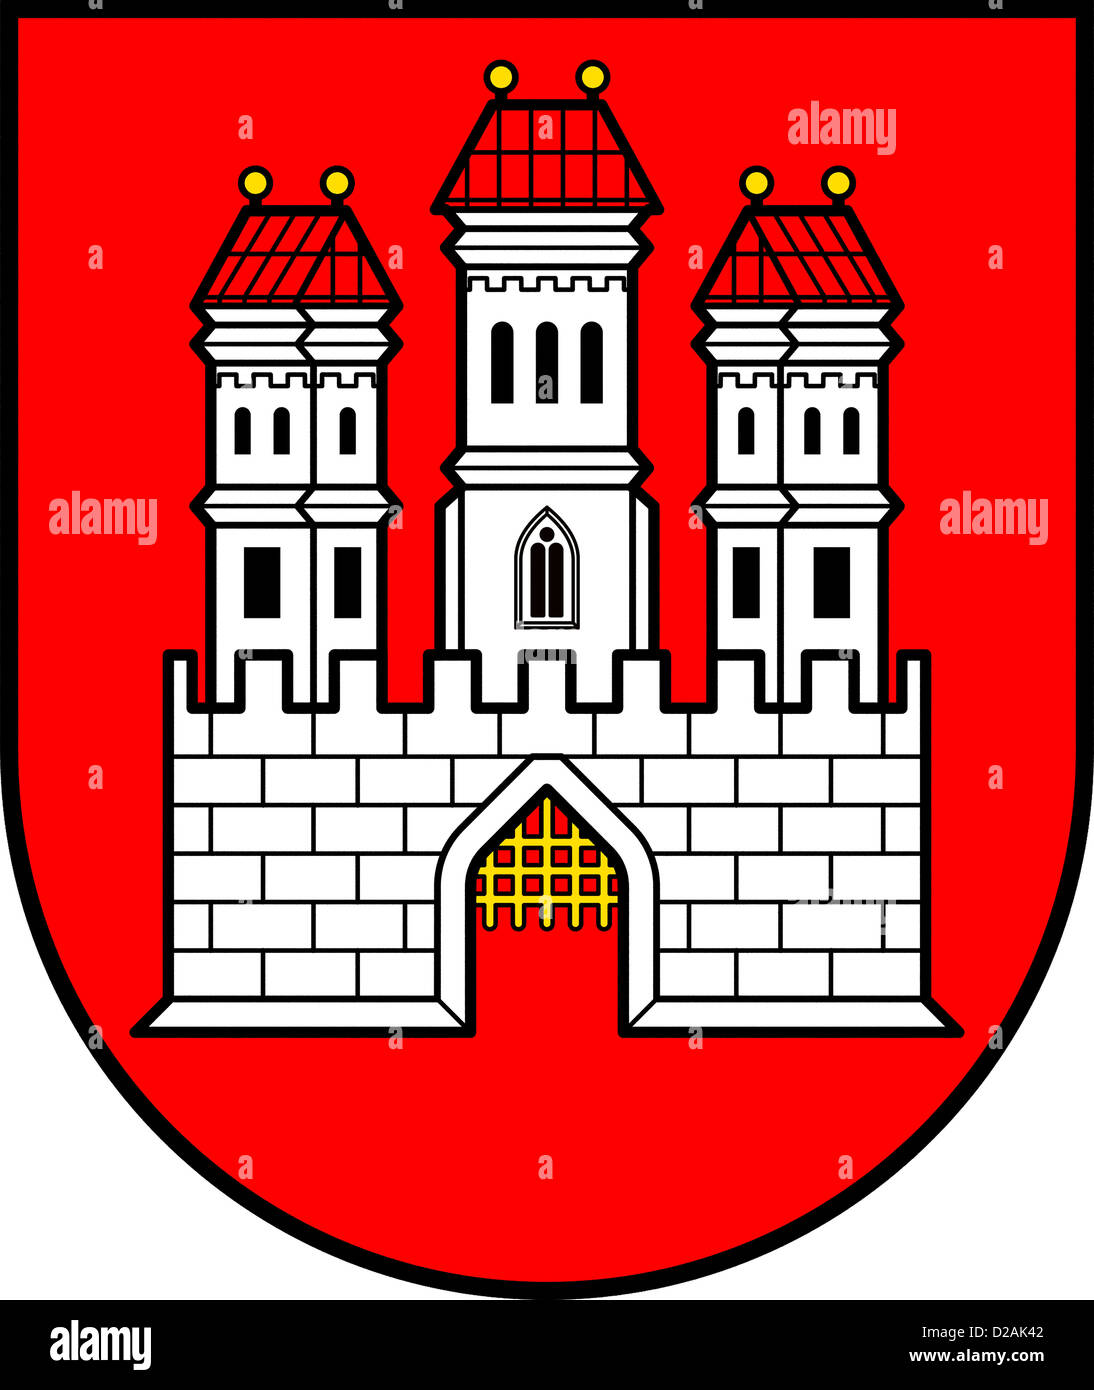 Wappen der slowakischen Hauptstadt Bratislava. Stockfoto